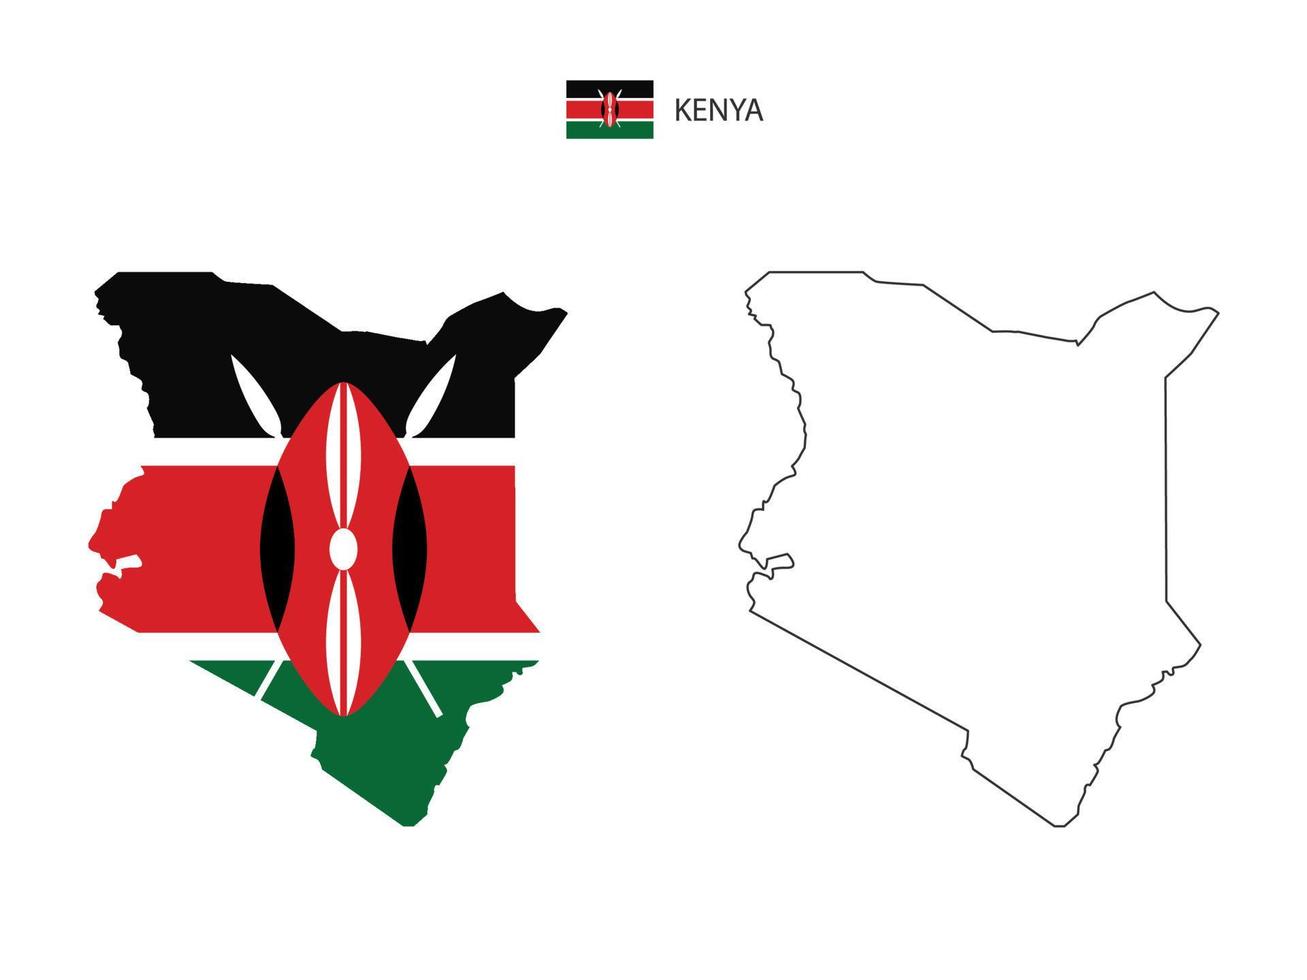 vetor da cidade do mapa do Quênia dividido pelo estilo de simplicidade do contorno. tem 2 versões, versão de linha fina preta e cor da versão da bandeira do país. ambos os mapas estavam no fundo branco.